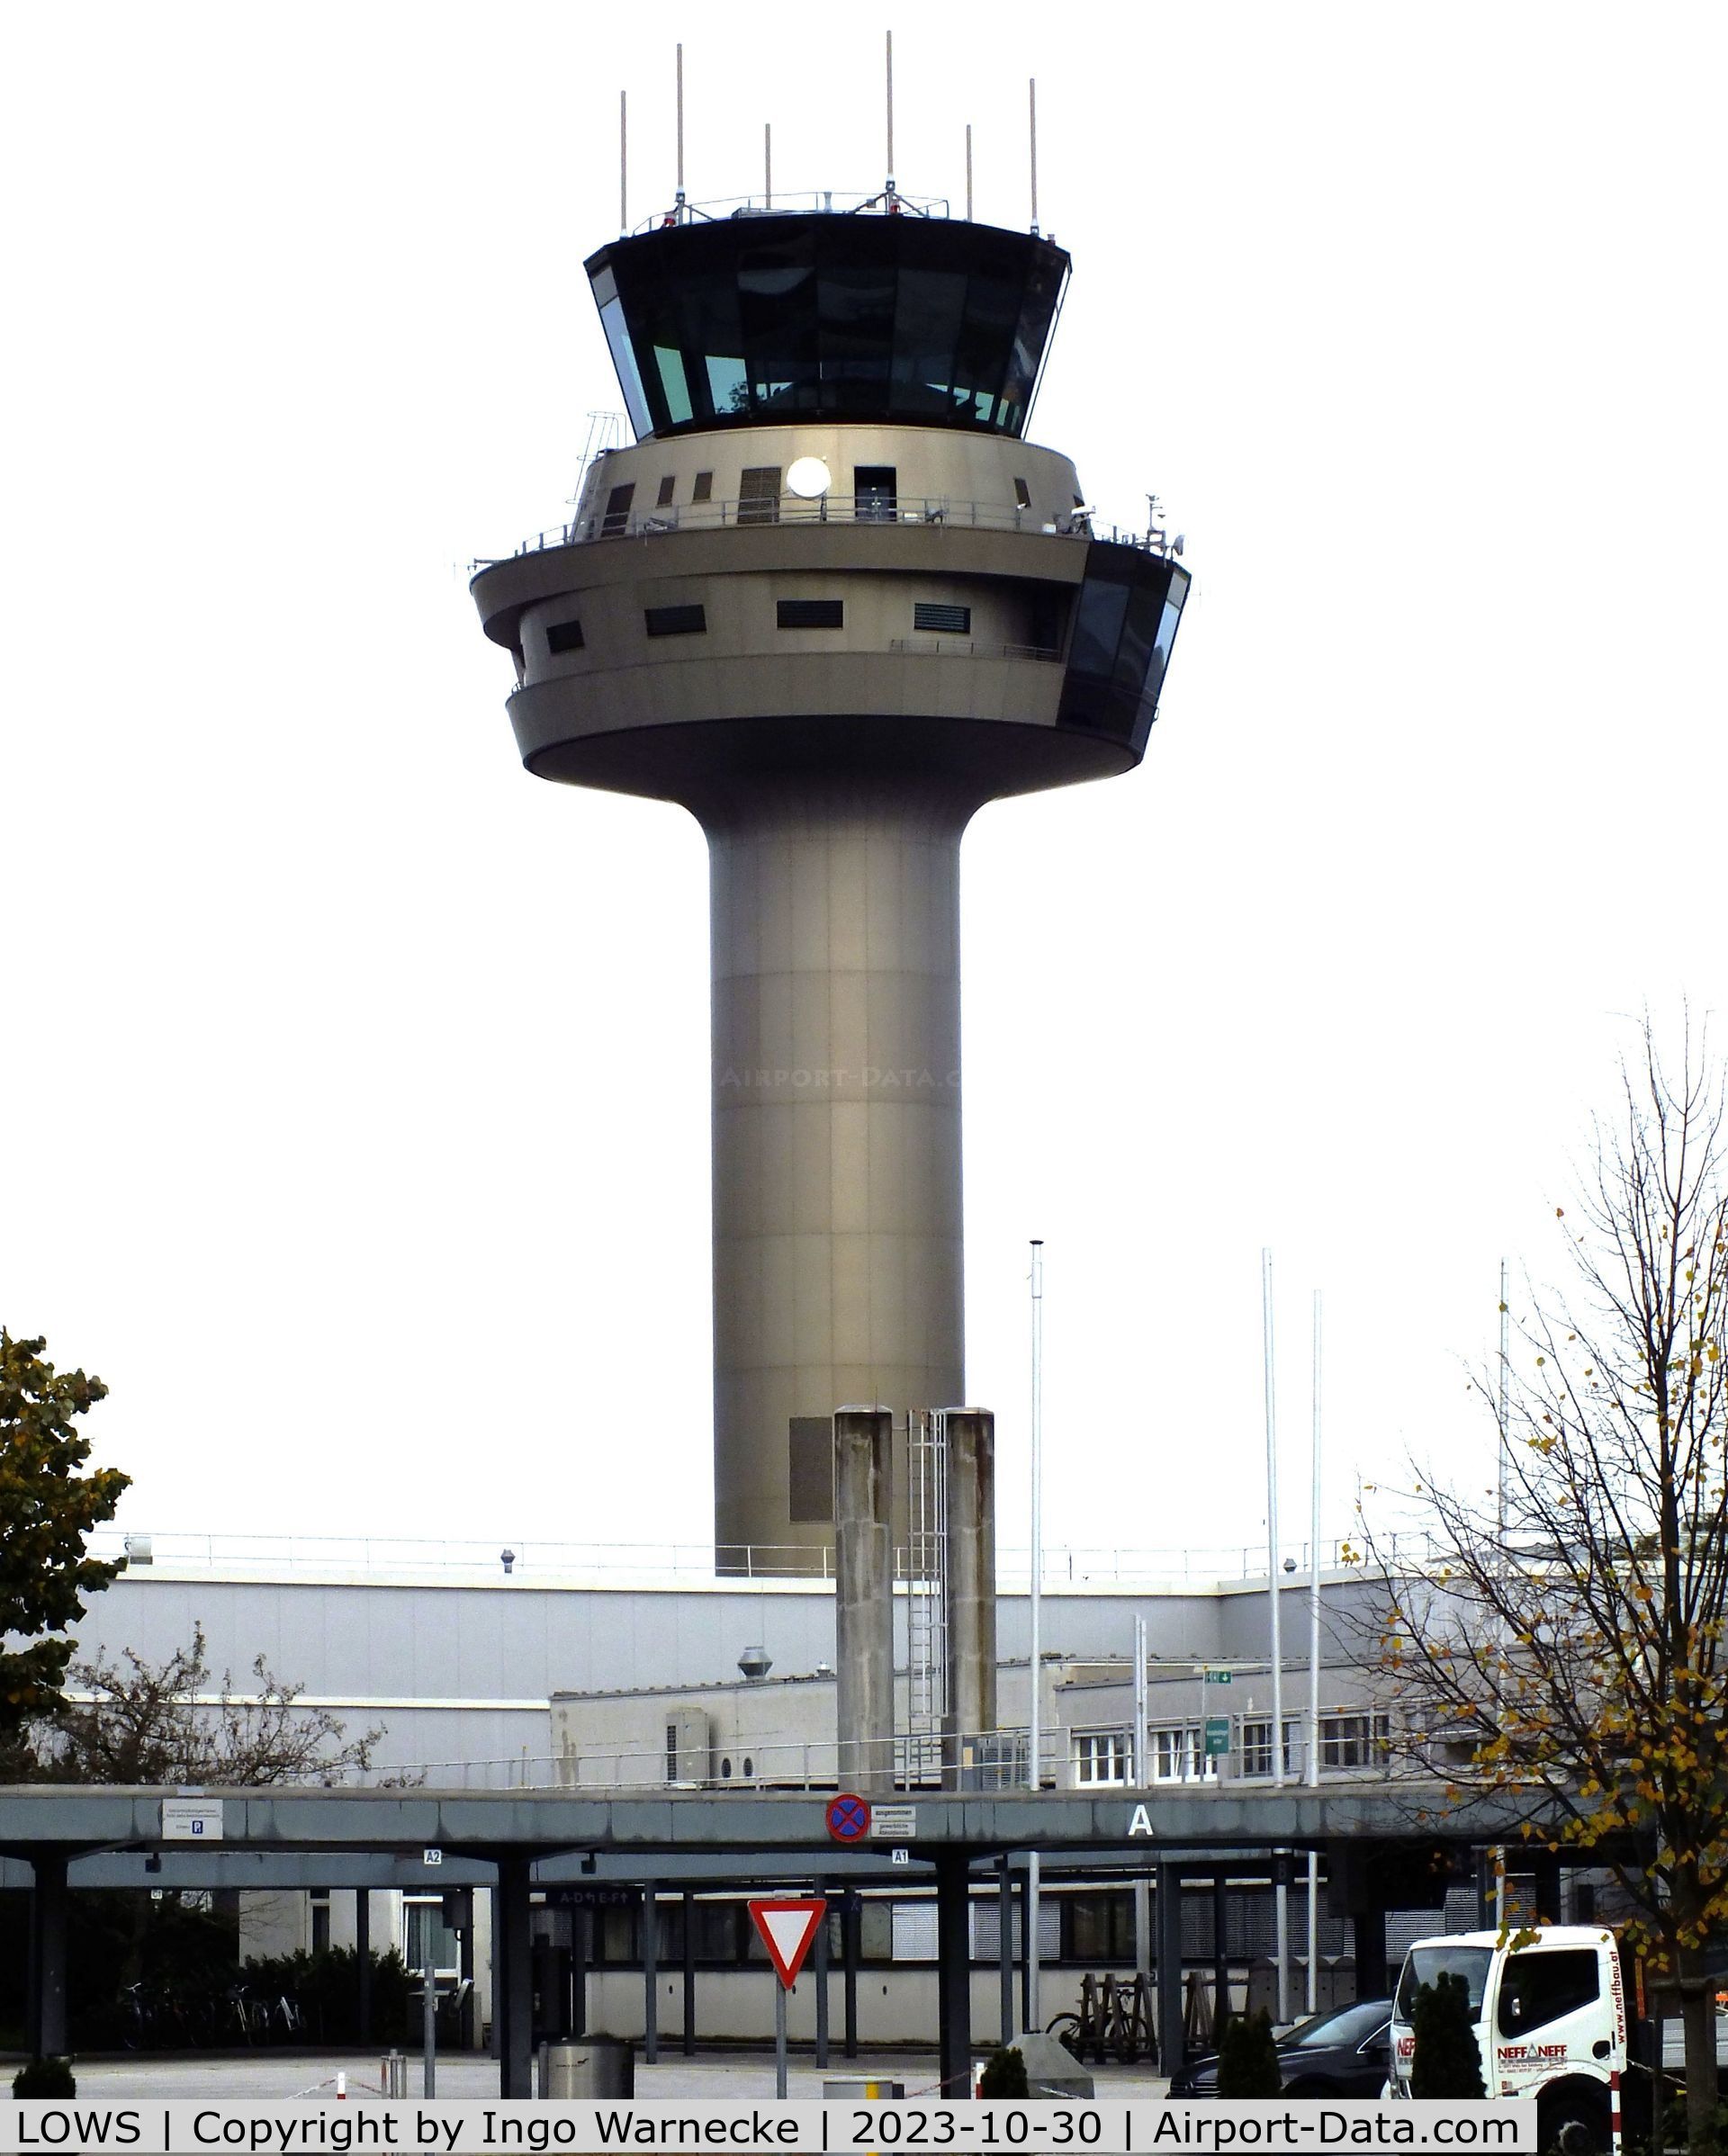 Salzburg Airport, Salzburg Austria (LOWS) - landside view of tower at Salzburg airport